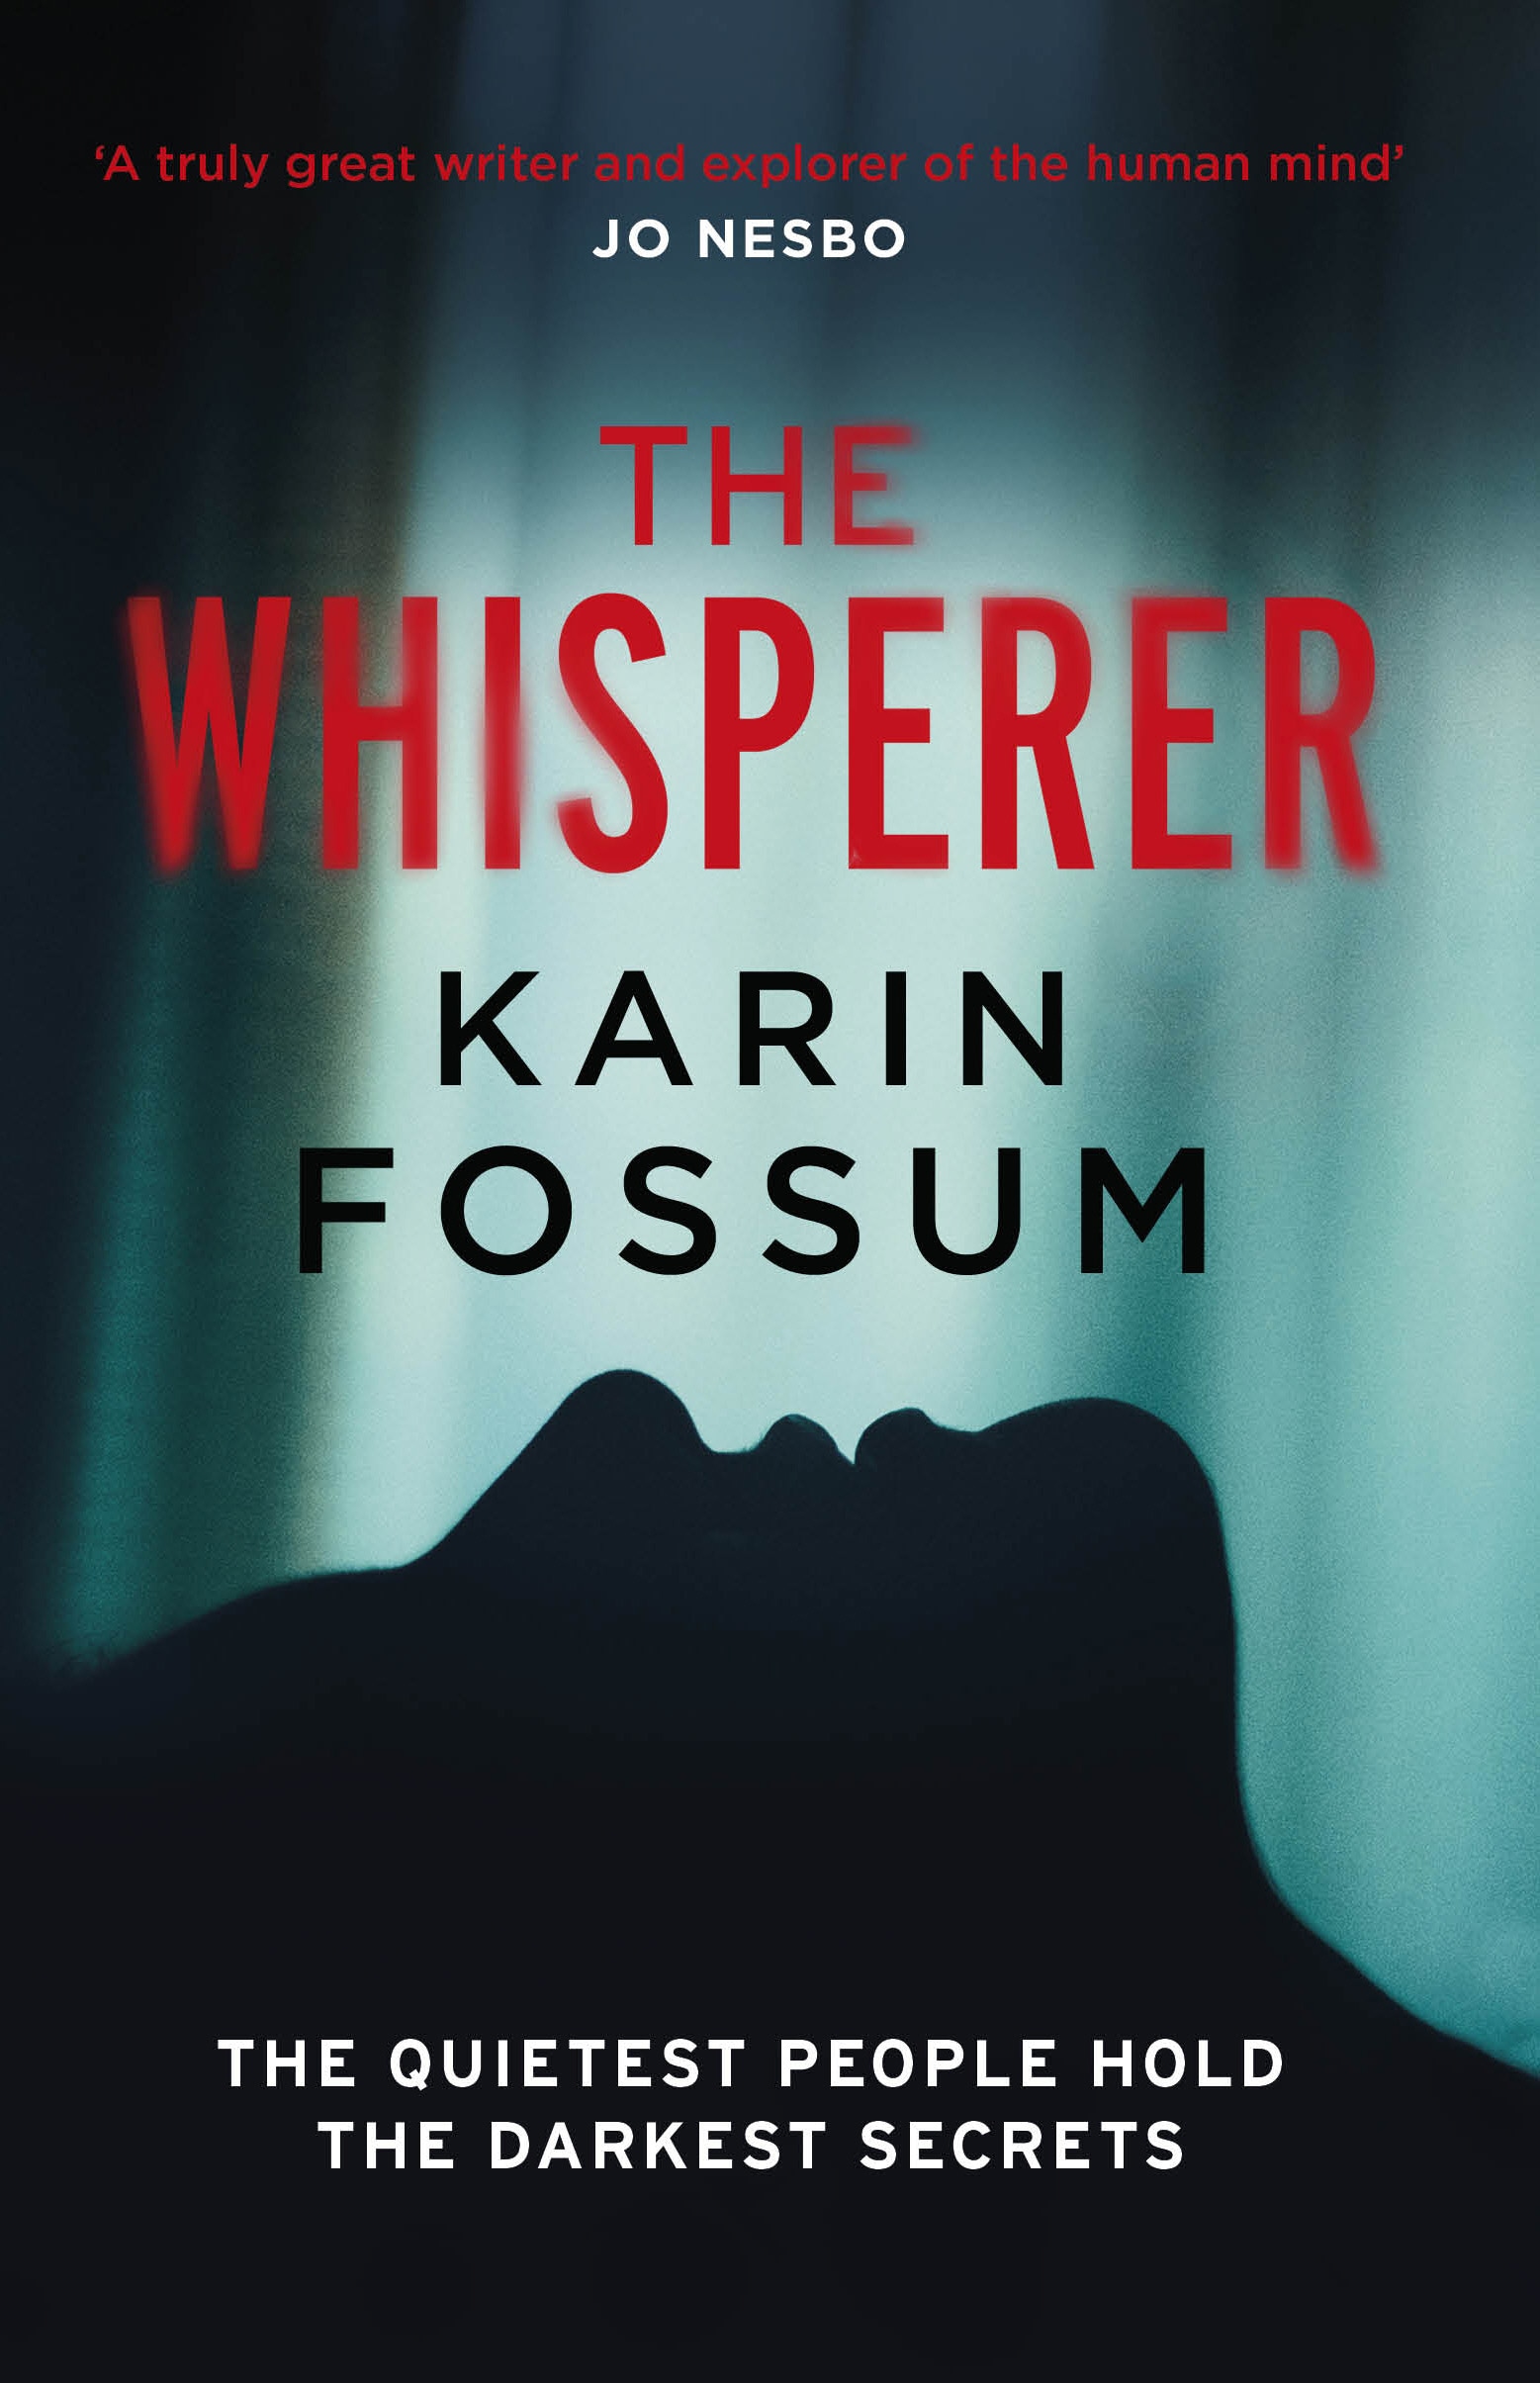 Book “The Whisperer” by Karin Fossum — November 7, 2019